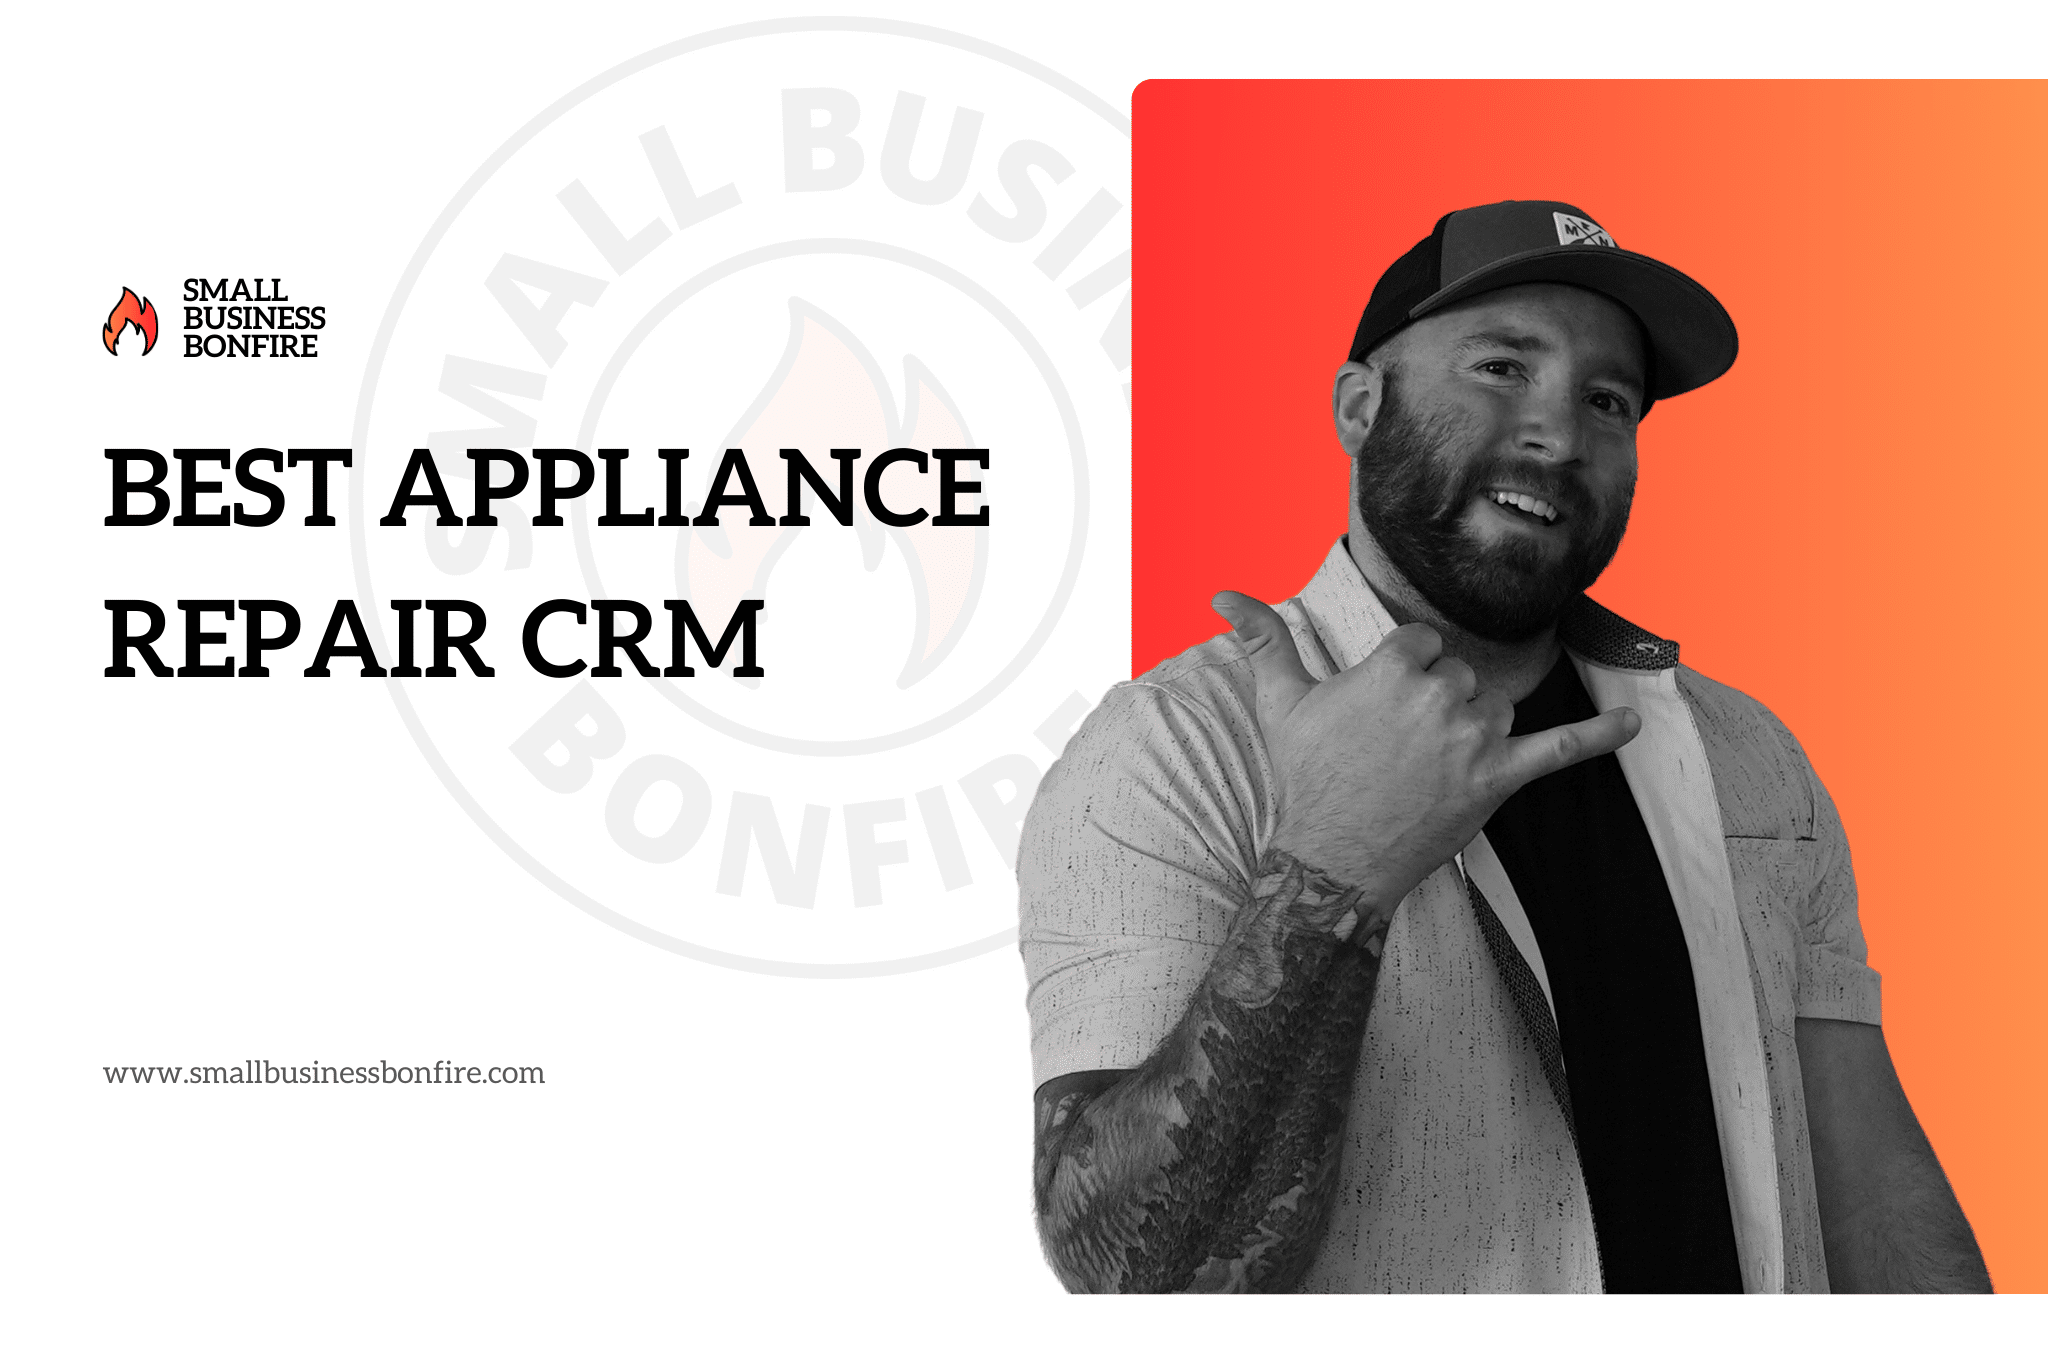 Best Appliance Repair CRM - Hero Image